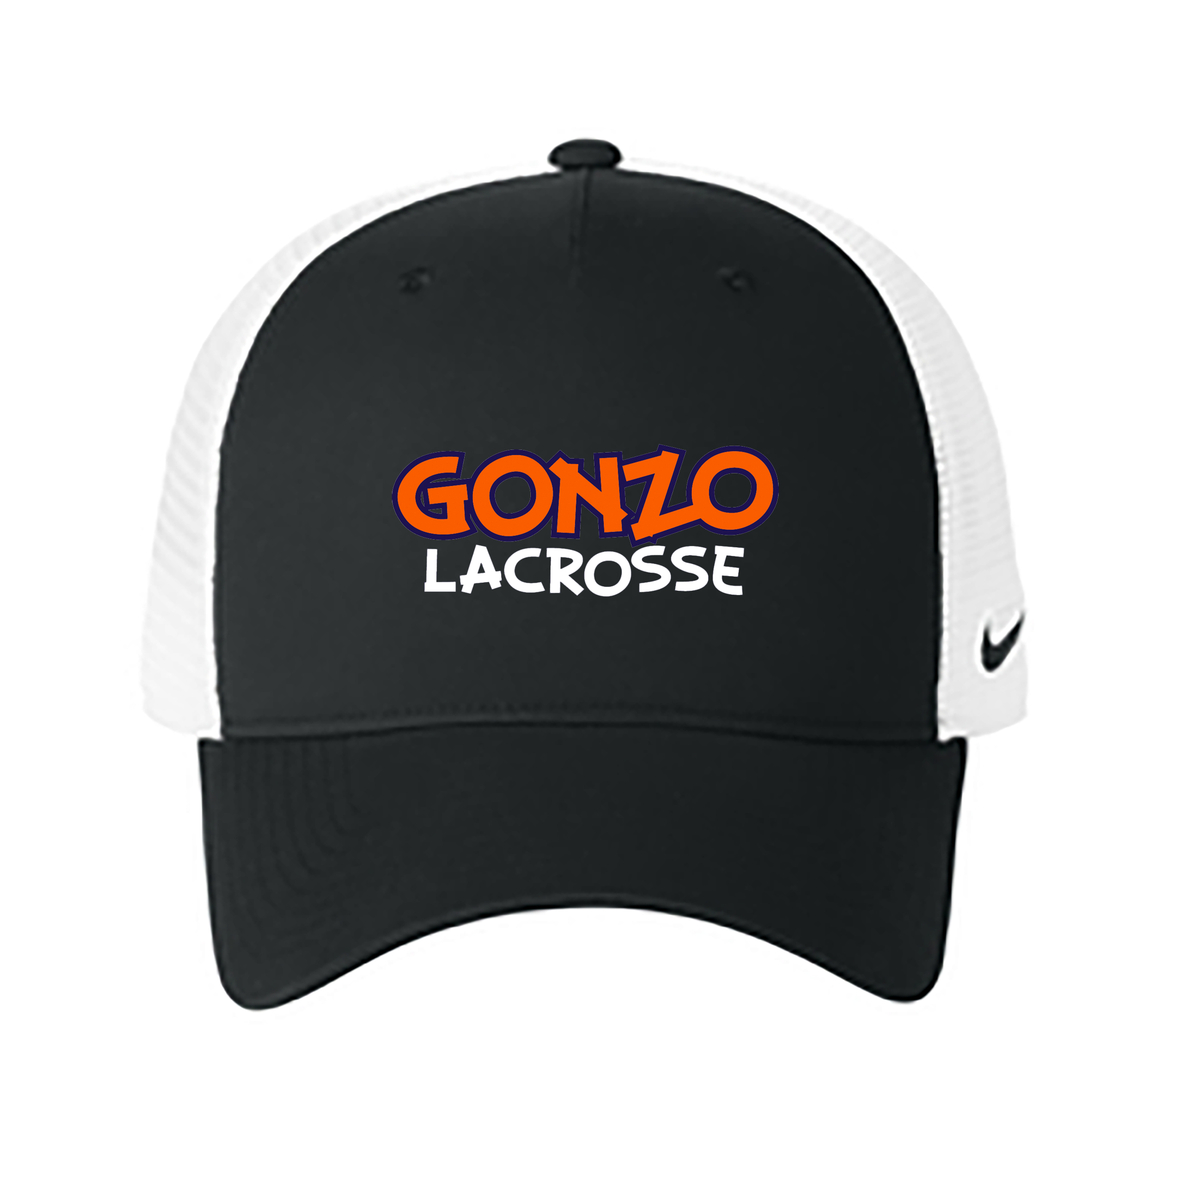 Gonzo Lacrosse Nike Snapback Mesh Trucker Cap